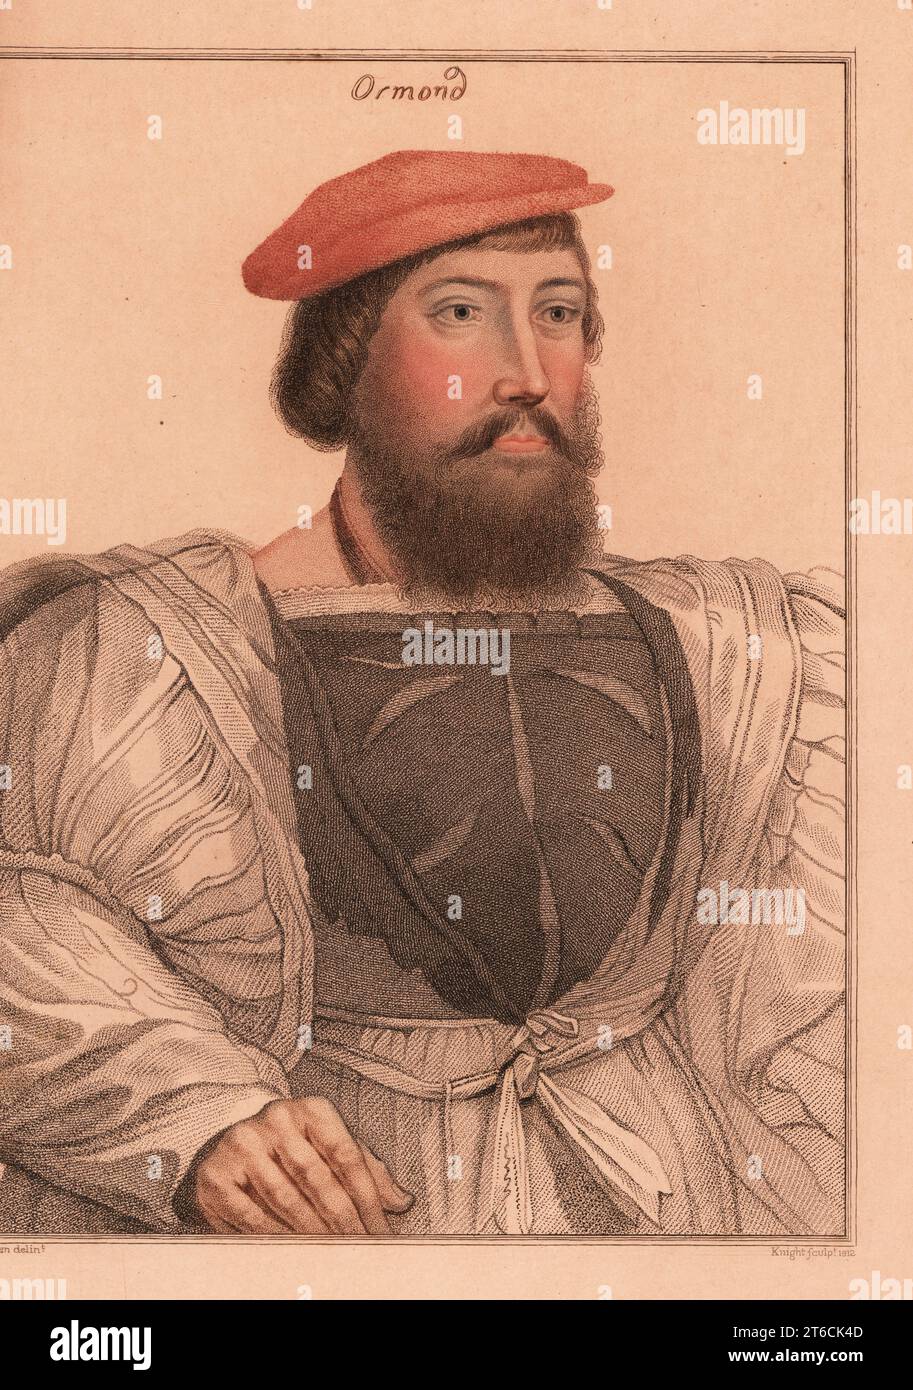 Thomas Boleyn, père d'Anne Boleyn, 1e comte de Wiltshire, 1e comte d'Ormond, 1e vicomte Rochford (c.14771539), diplomate et homme politique anglais. Également identifié comme James Butler, 9e comte d'Ormond et 2e comte d'Ossory (c.1496-1546). Gravure sur stipple en cuivre coloriée à la main par Charles Knight d'après un portrait de Hans Holbein le Jeune à partir d'imitations de dessins originaux de Hans Holbein, John Chamberlaine, Londres, 1812. Banque D'Images